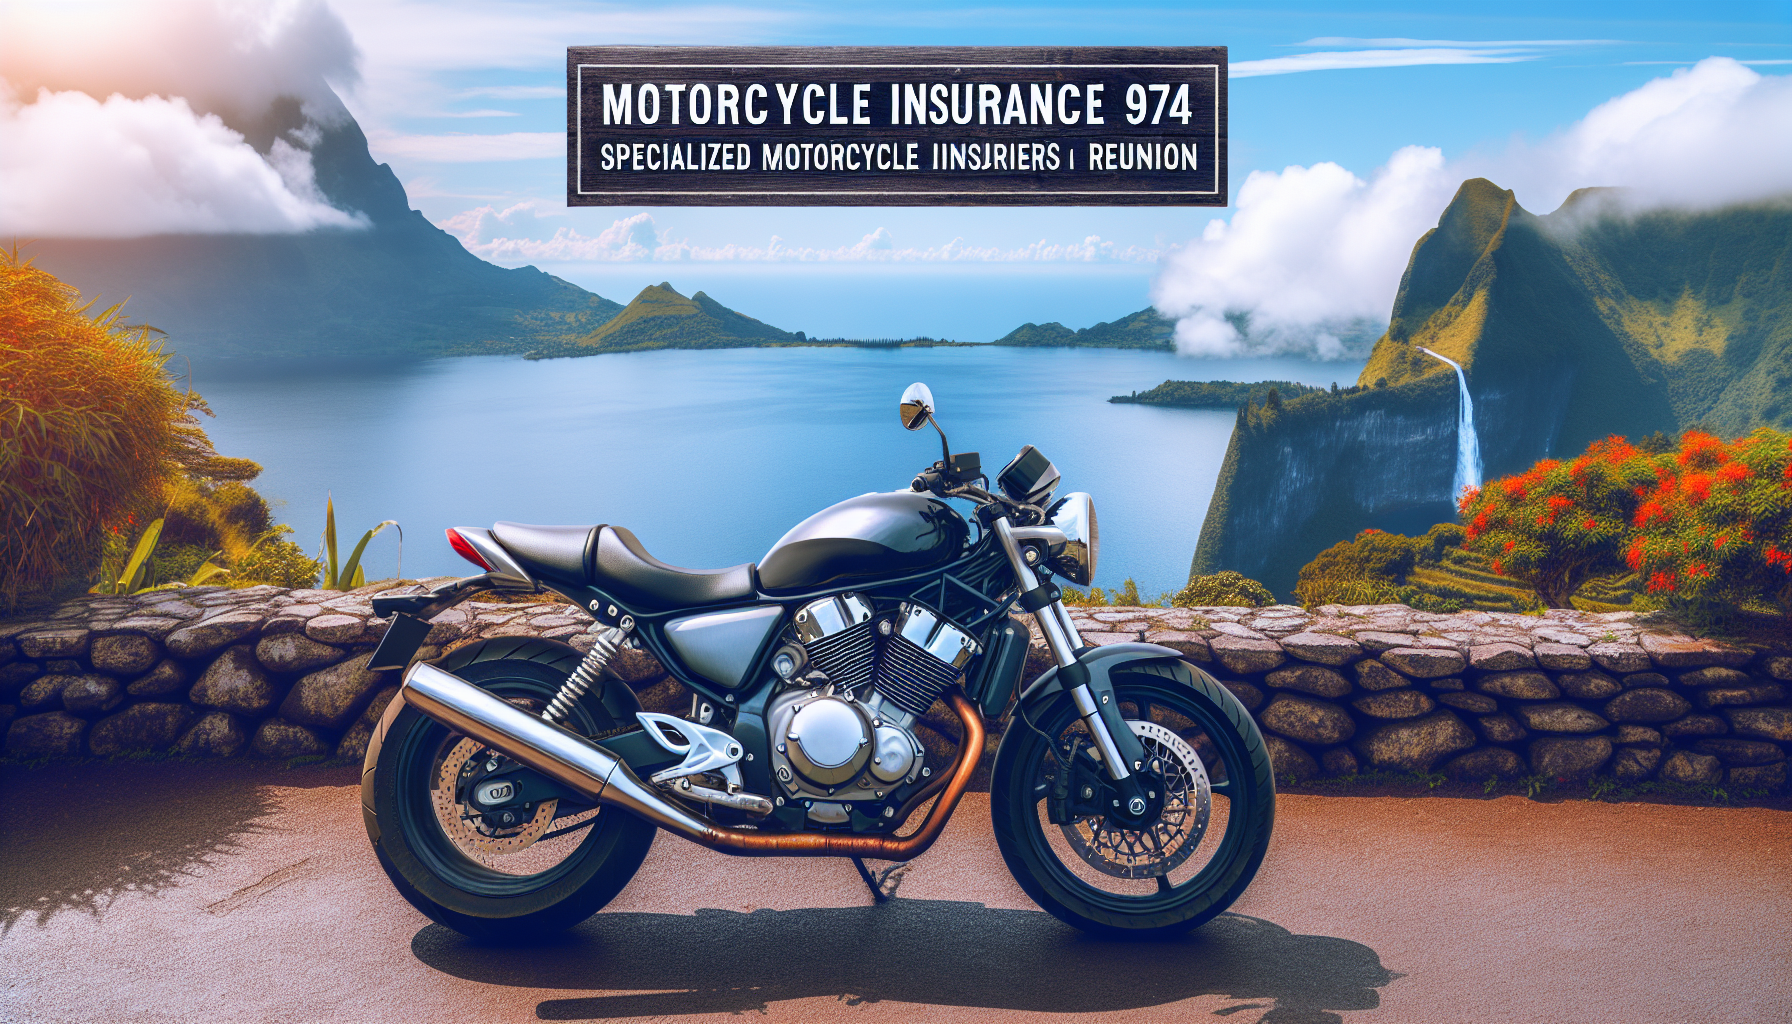 trouvez une assurance moto adaptée à la réunion avec des assureurs spécialisés. comparez les offres d'assurance moto 974 et protégez votre véhicule avec la meilleure couverture.